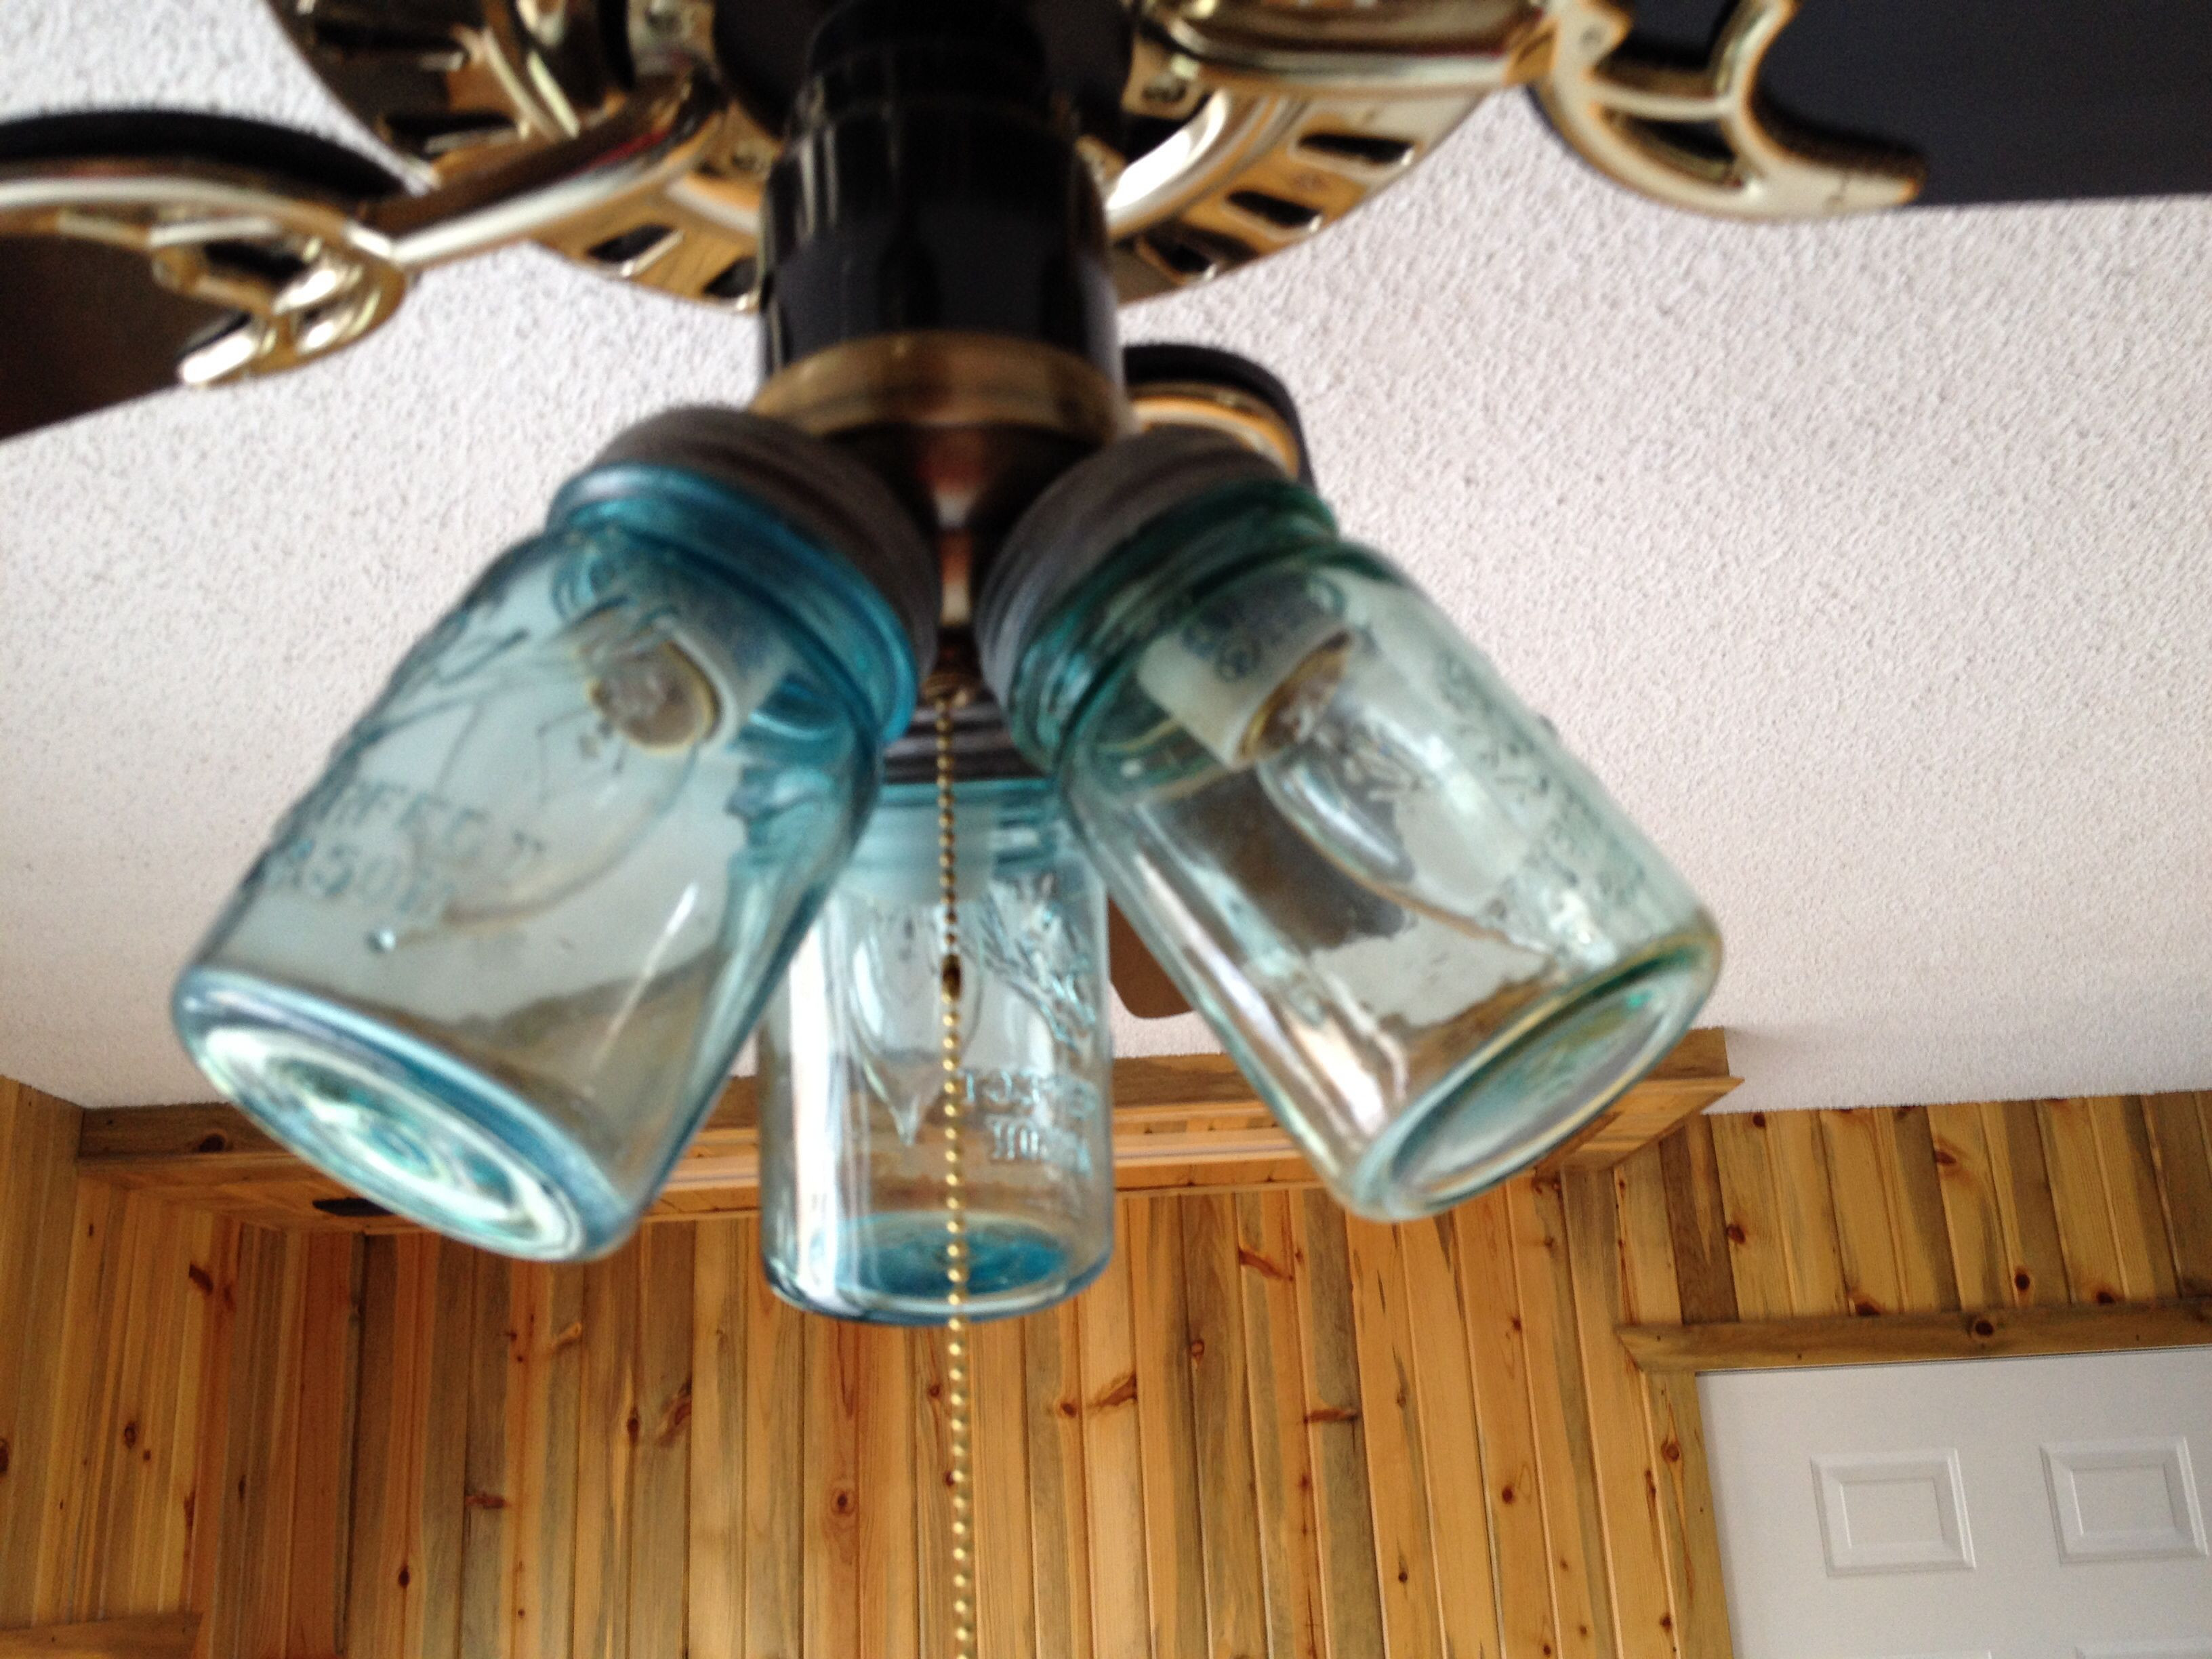 Best ideas about DIY Ceiling Fan Light Covers
. Save or Pin Mason jar ceiling fan light covers Now.